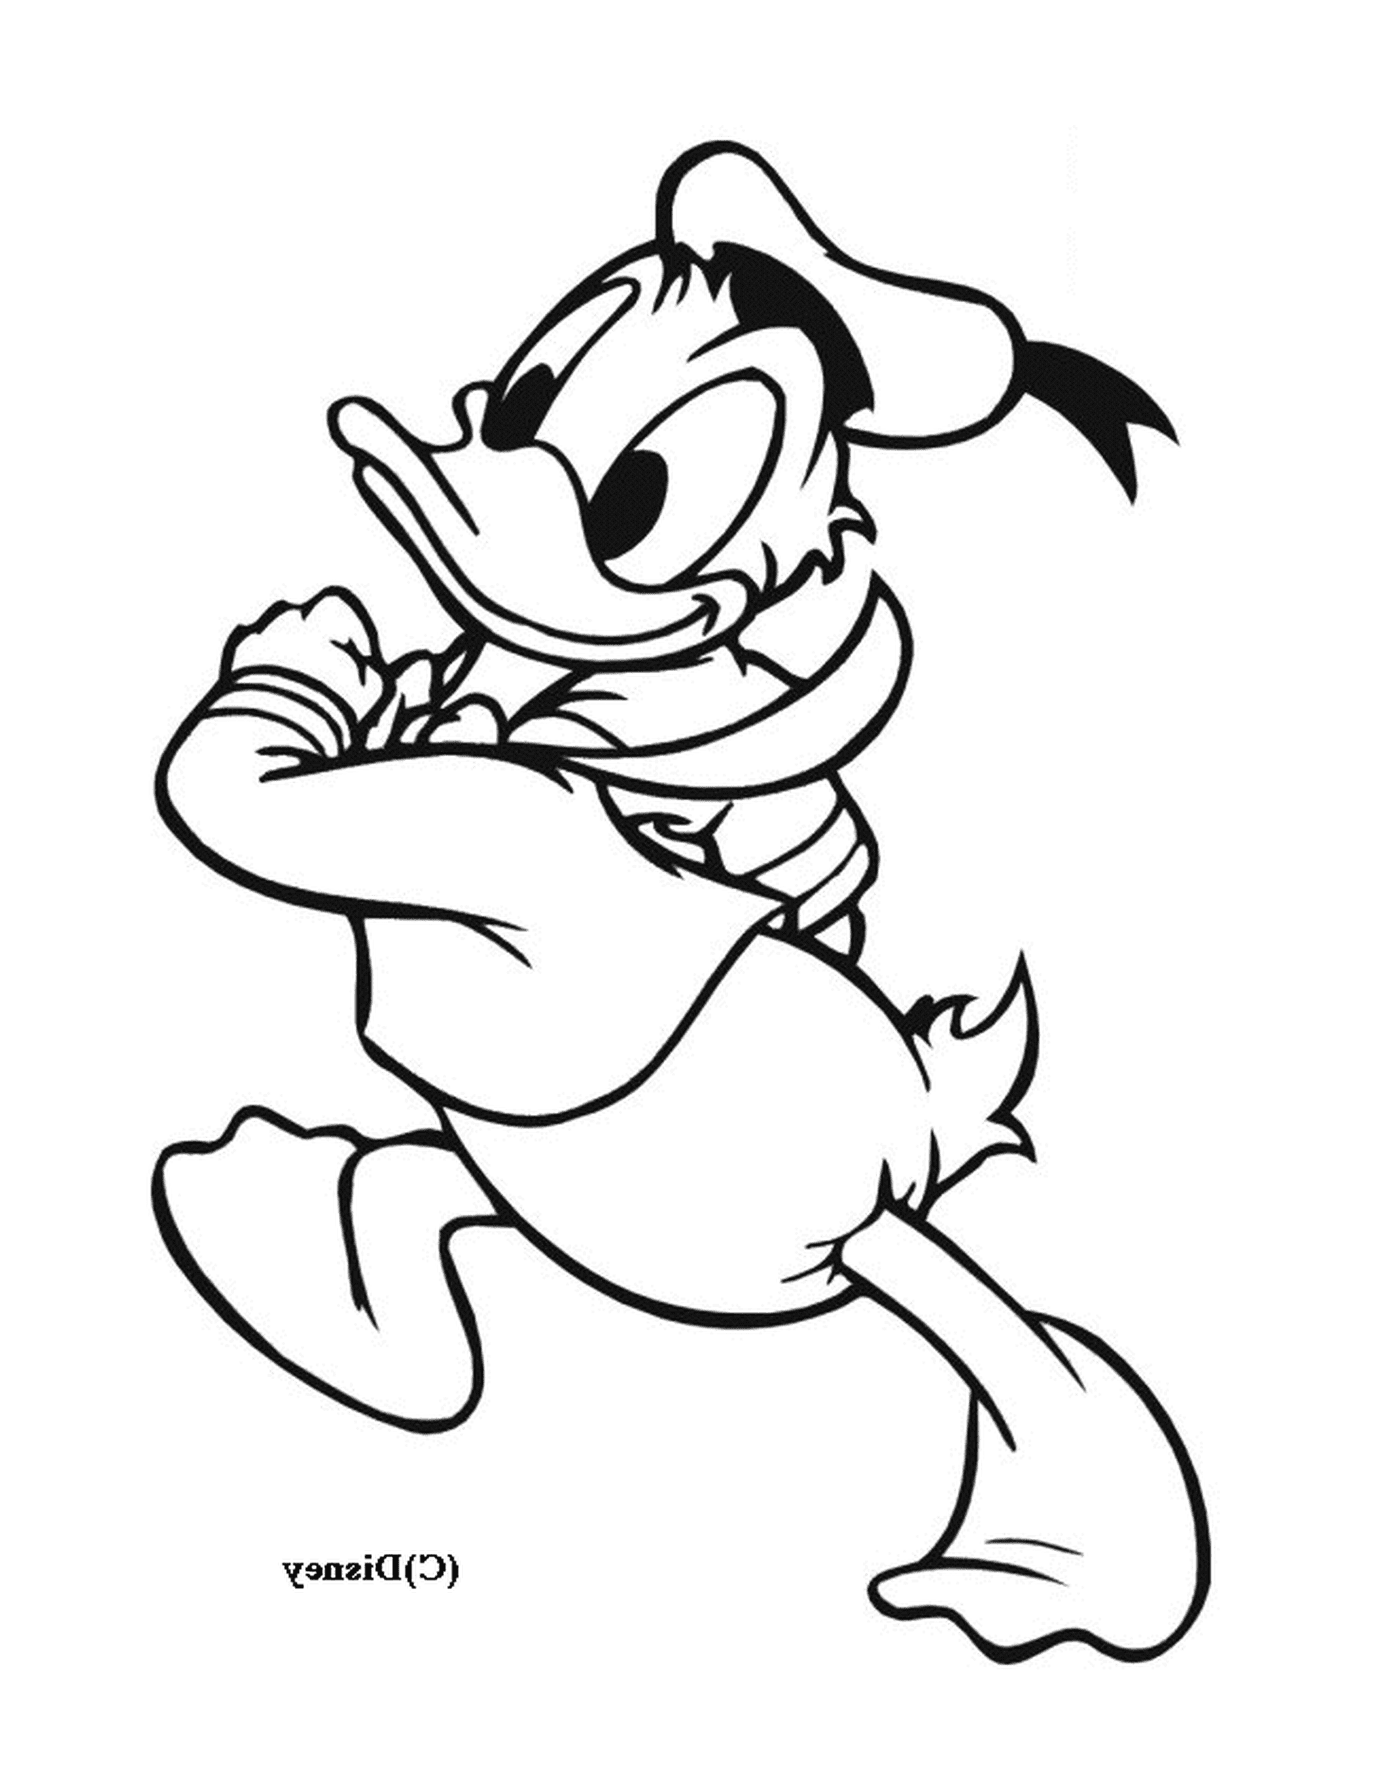  Donald Duck 带着绳子跑得很开心 